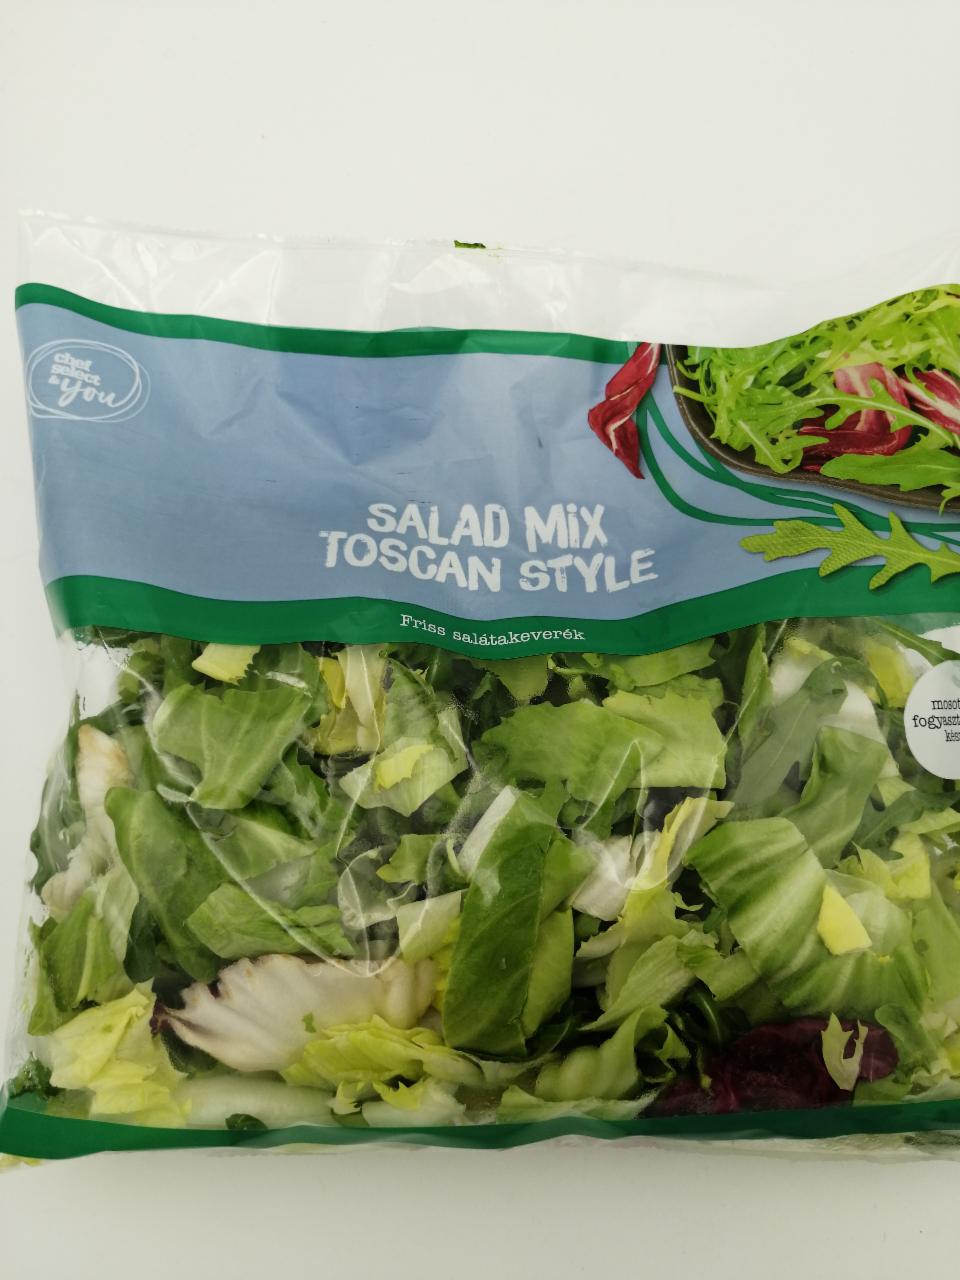 Képek - Salad mix Toscan style Lidl